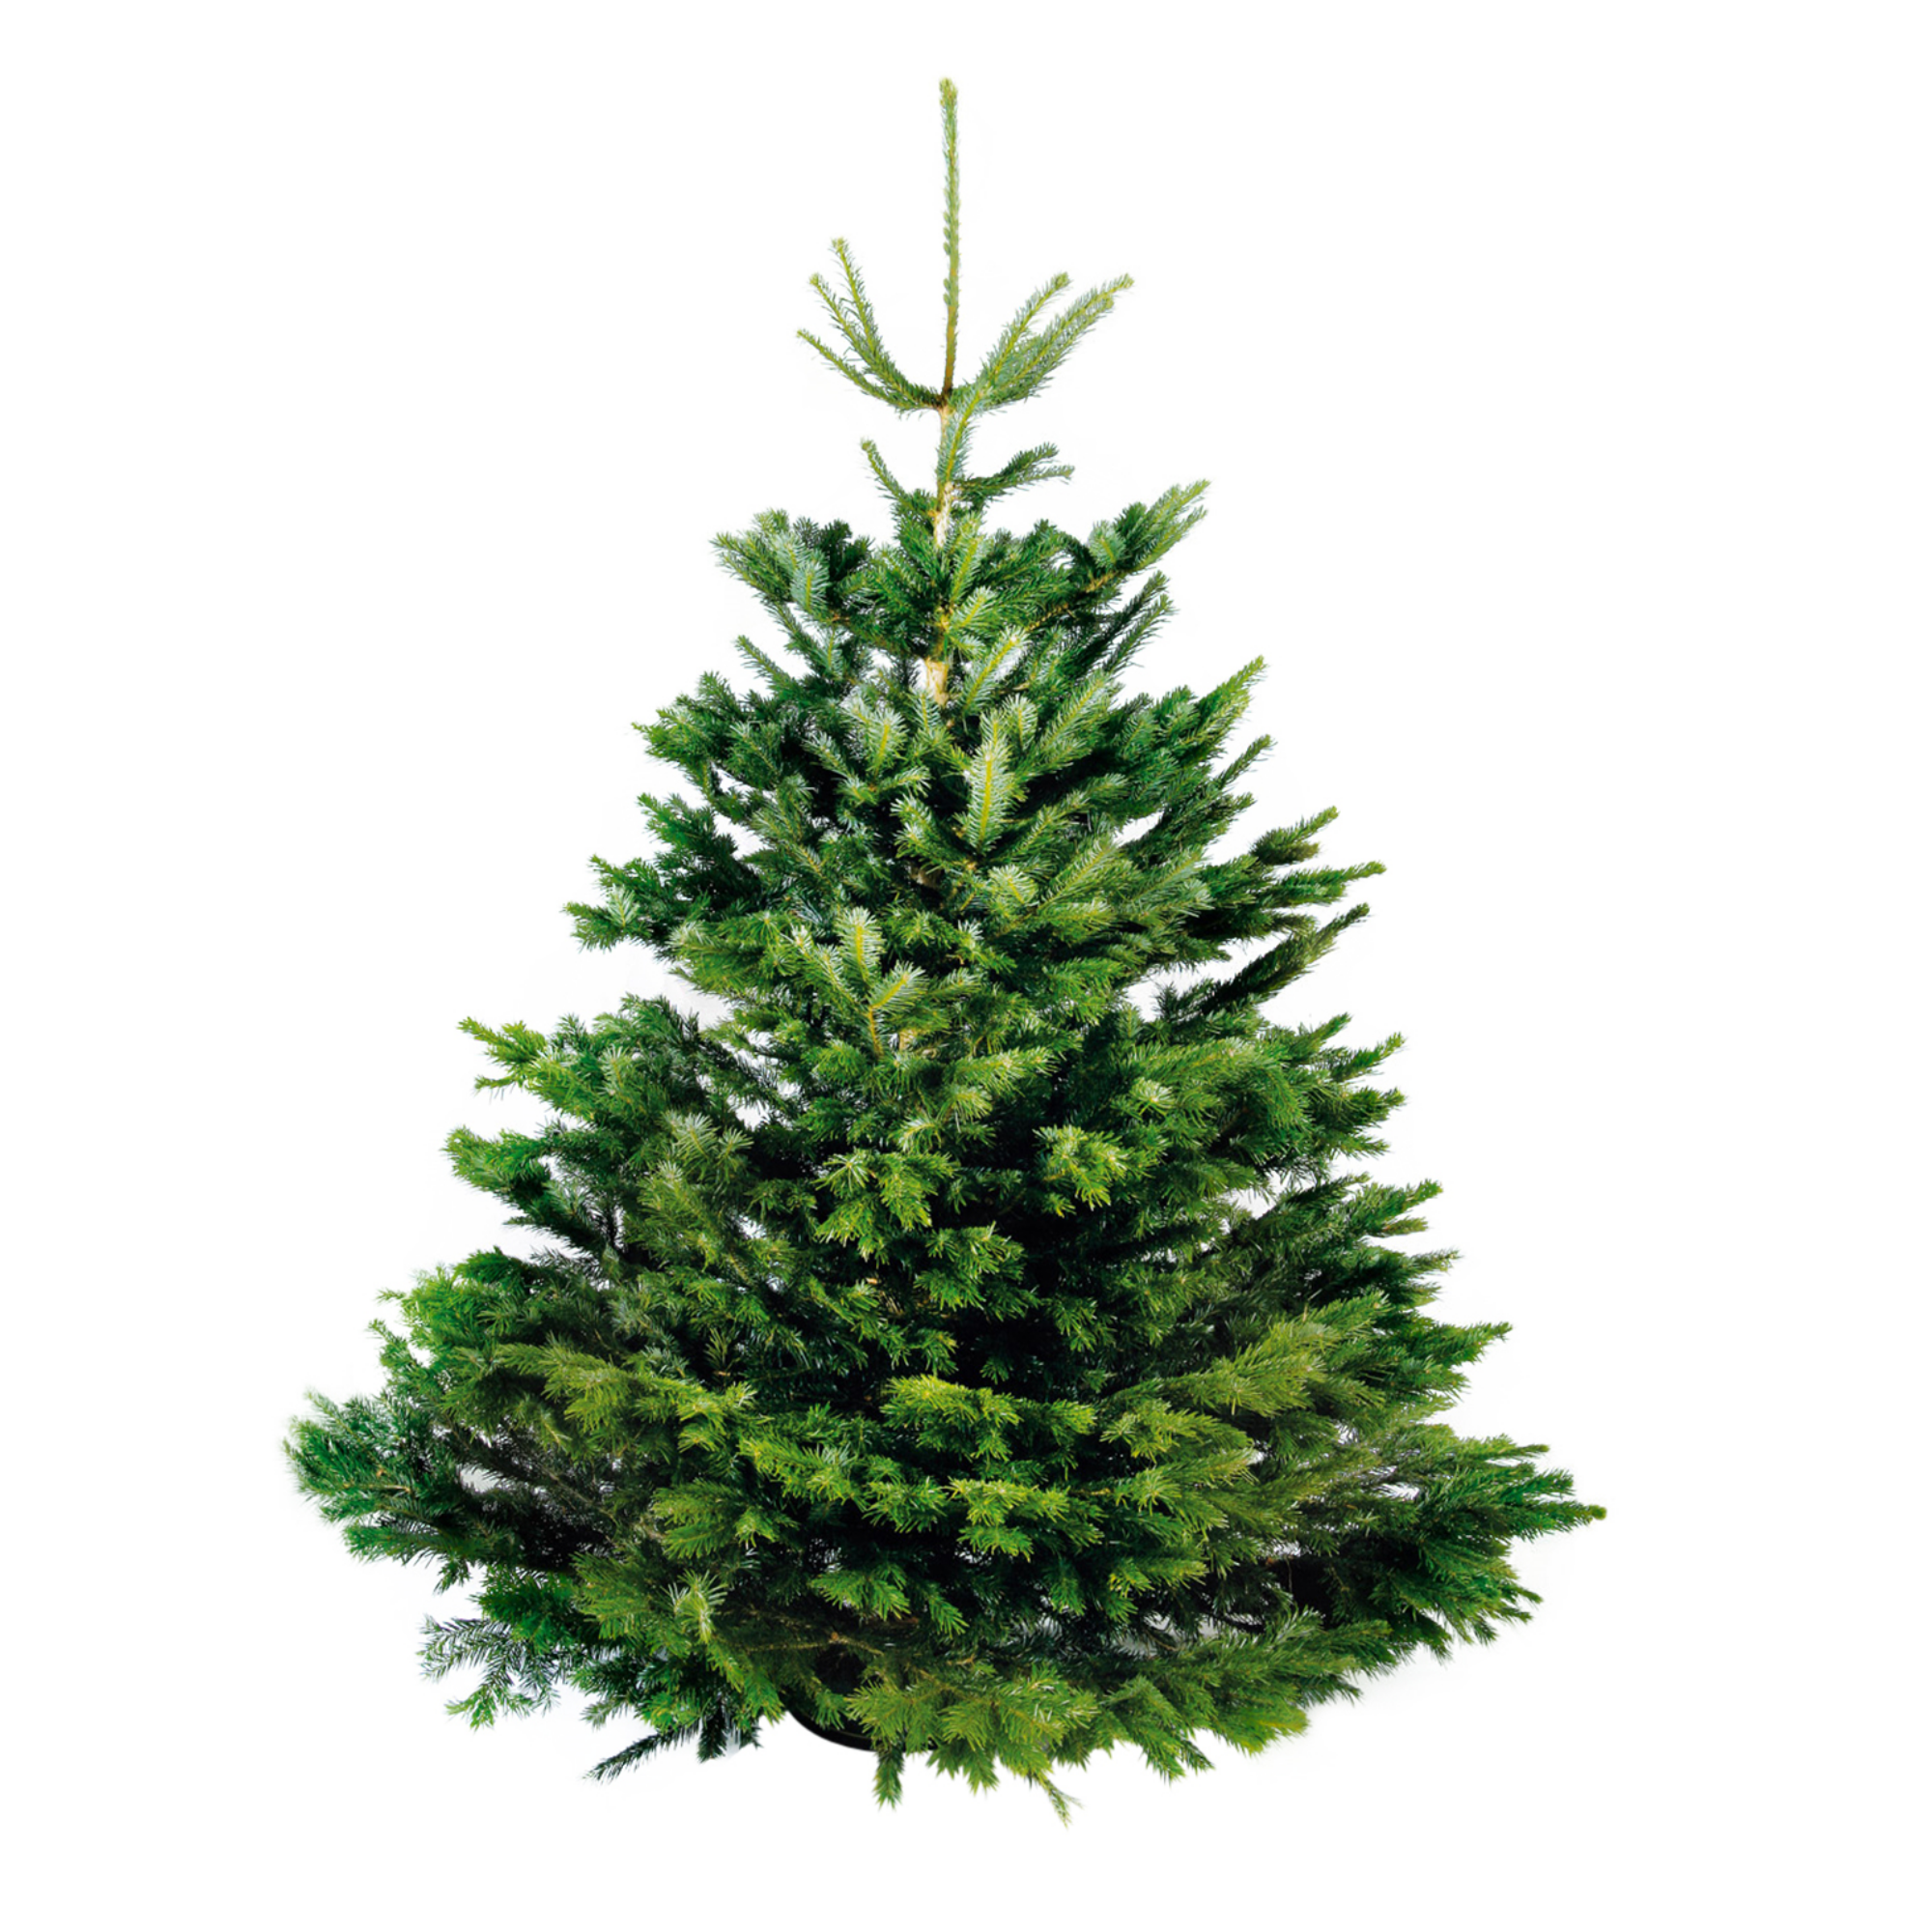 Een echte kerstboom in huis halen: alles wat je wil weten over de verschillende soorten kerstbomen, de verzorging &